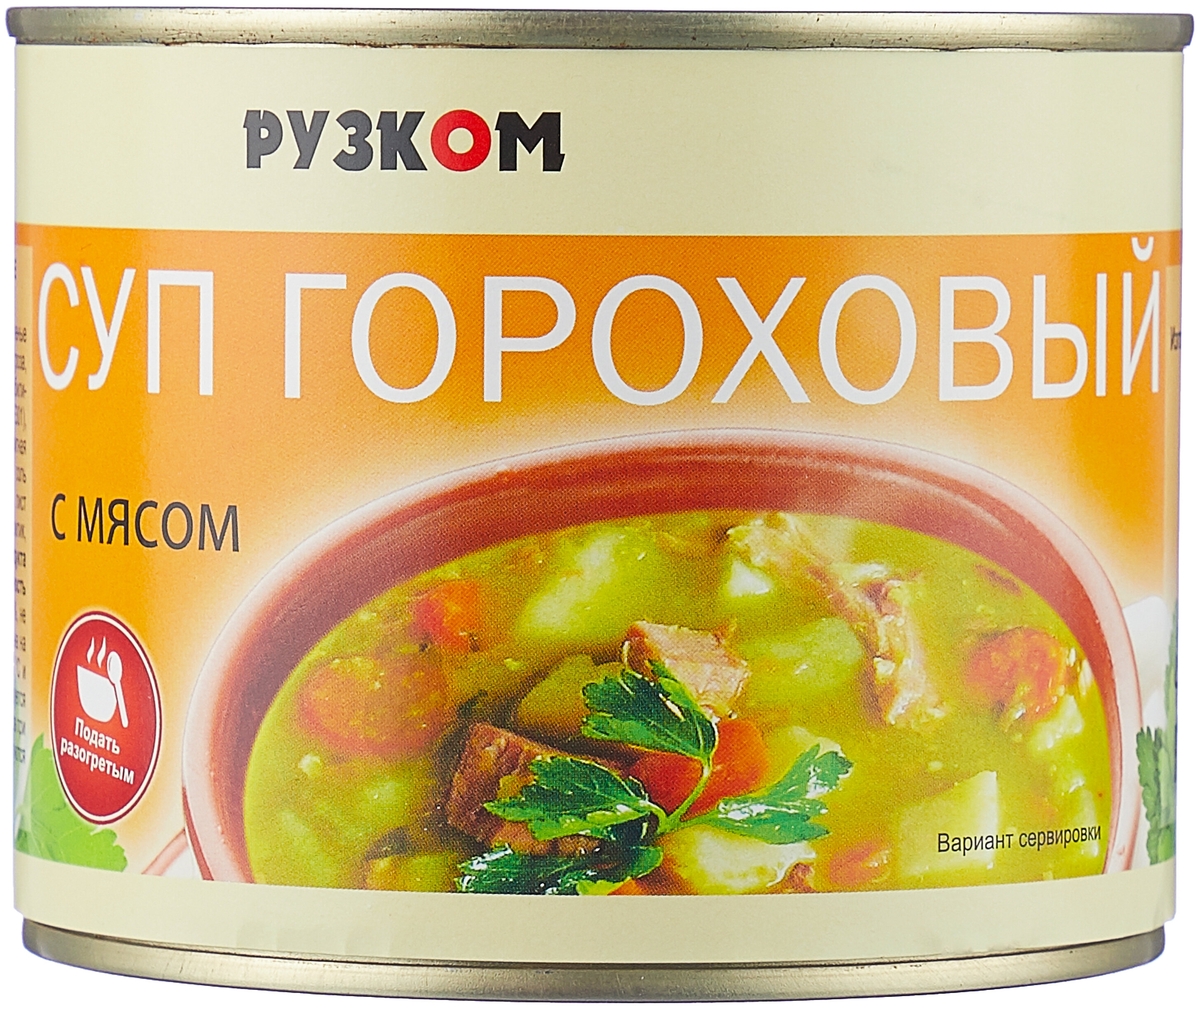 Суп гороховый с мясом 540гр  РУЗКОМ  ж.б.